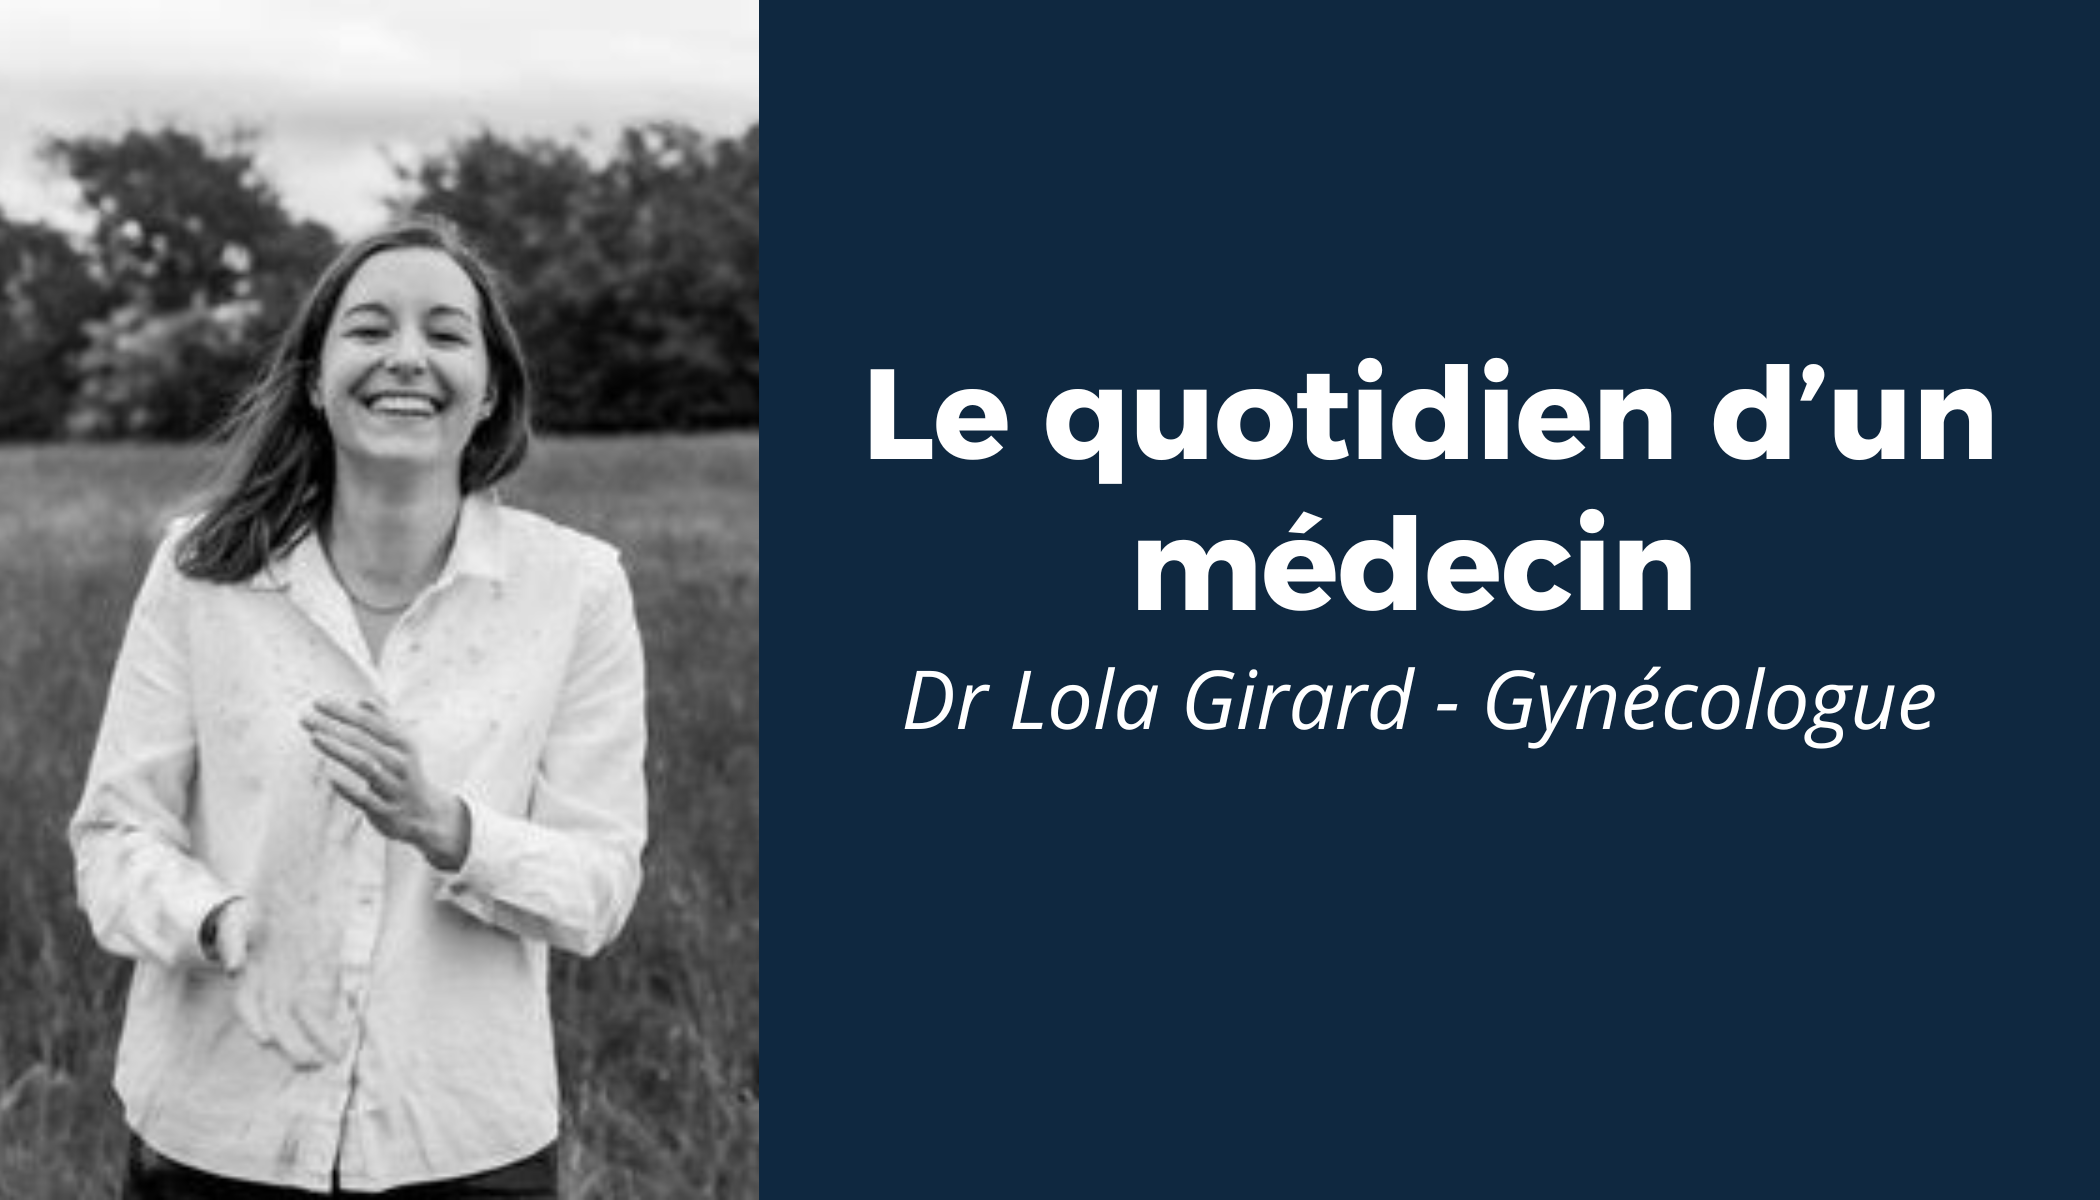 “Le quotidien d’un médecin” #6 - Rencontre avec le Dr Lola Girard 